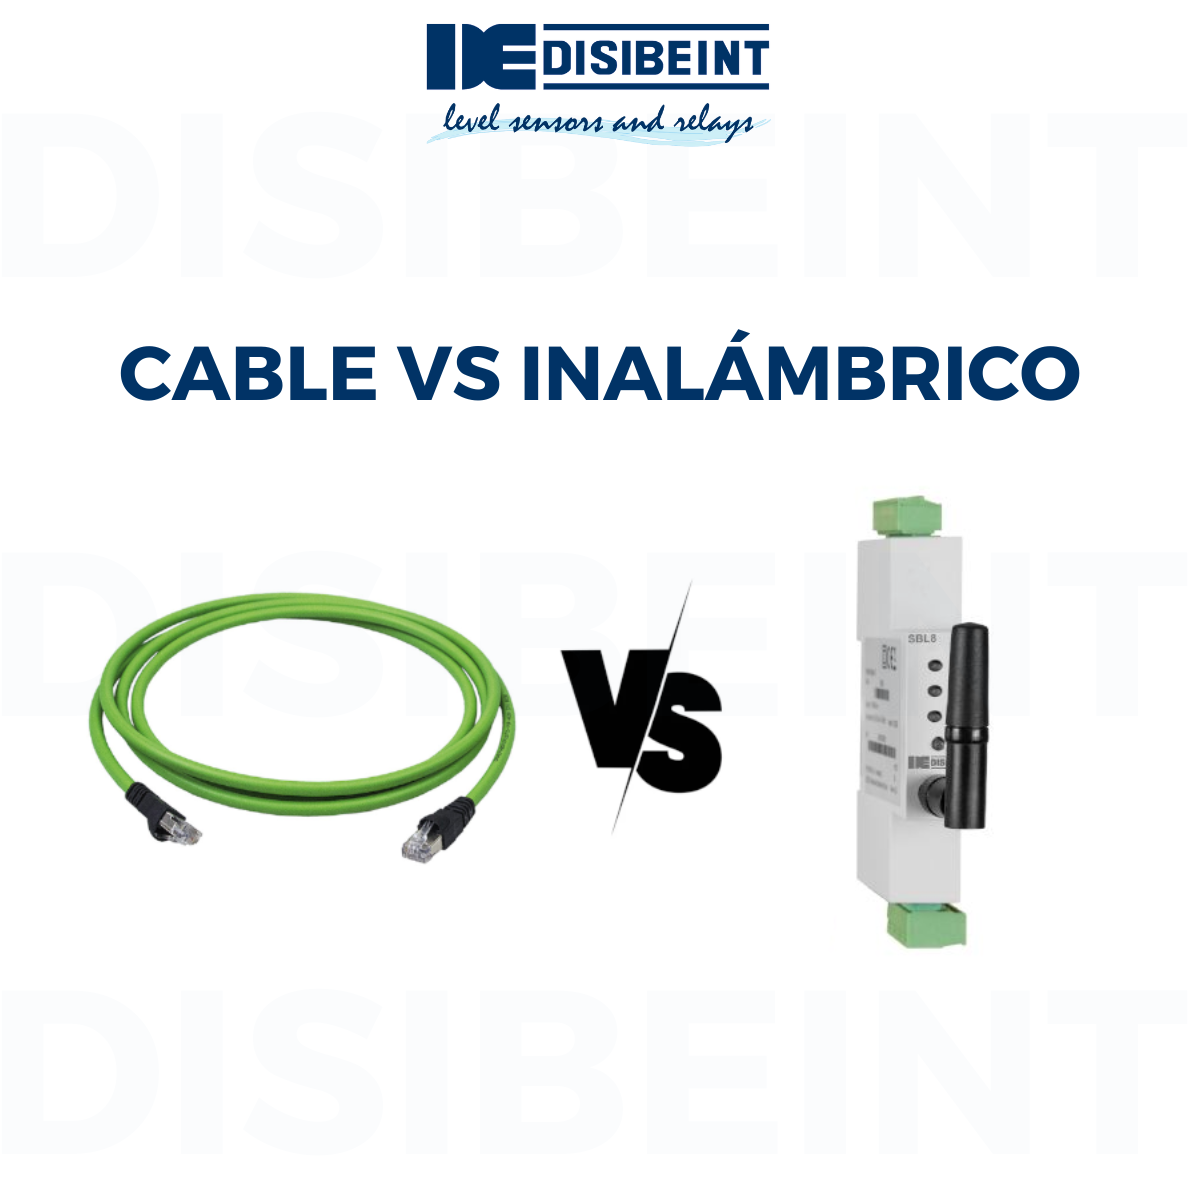 Cable vs Inalmbrico